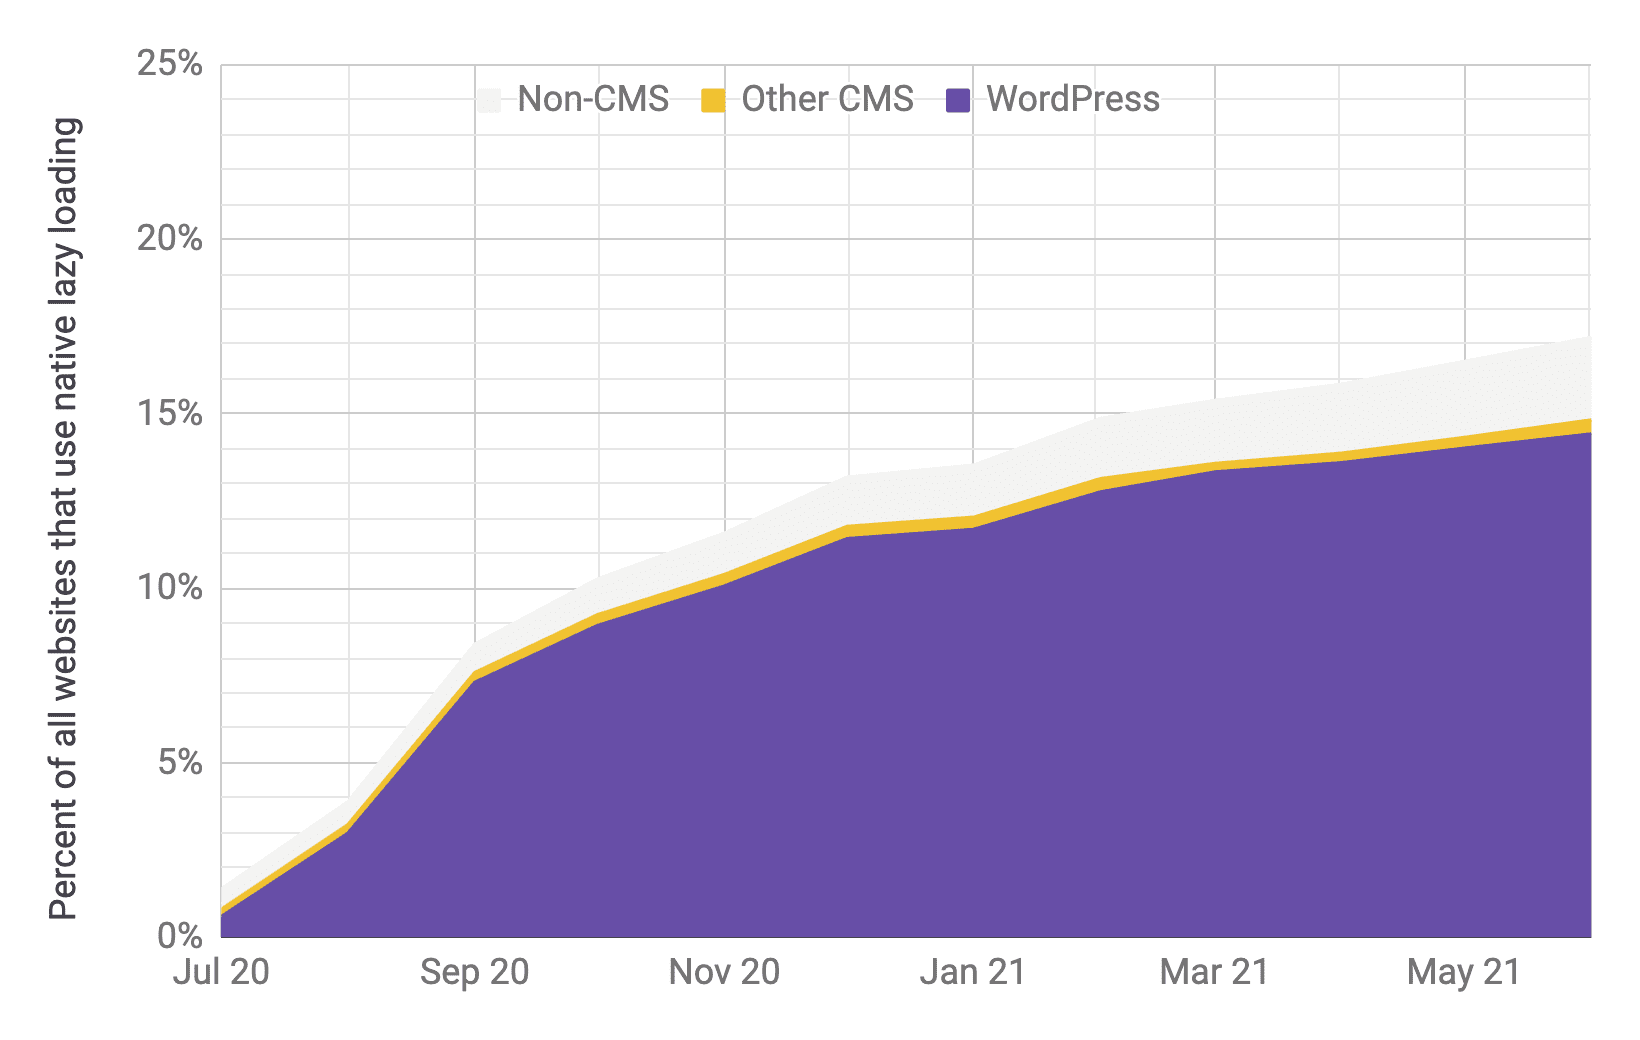 رسم بياني للسلسلة الزمنية لاعتماد التحميل الكسول مع WordPress كونه المشغّل الأكثر بروزًا مقارنةً بأنظمة إدارة المحتوى الأخرى وغيرها من الأنظمة الأخرى التي لا تستخدم أنظمة إدارة المحتوى، وبنسب مماثلة للرسم البياني السابق ويظهِر أنّ إجمالي الاستخدام قد ازداد بسرعة من% 1 إلى% 17 من تموز (يوليو) 2020 إلى حزيران (يونيو) 2021.